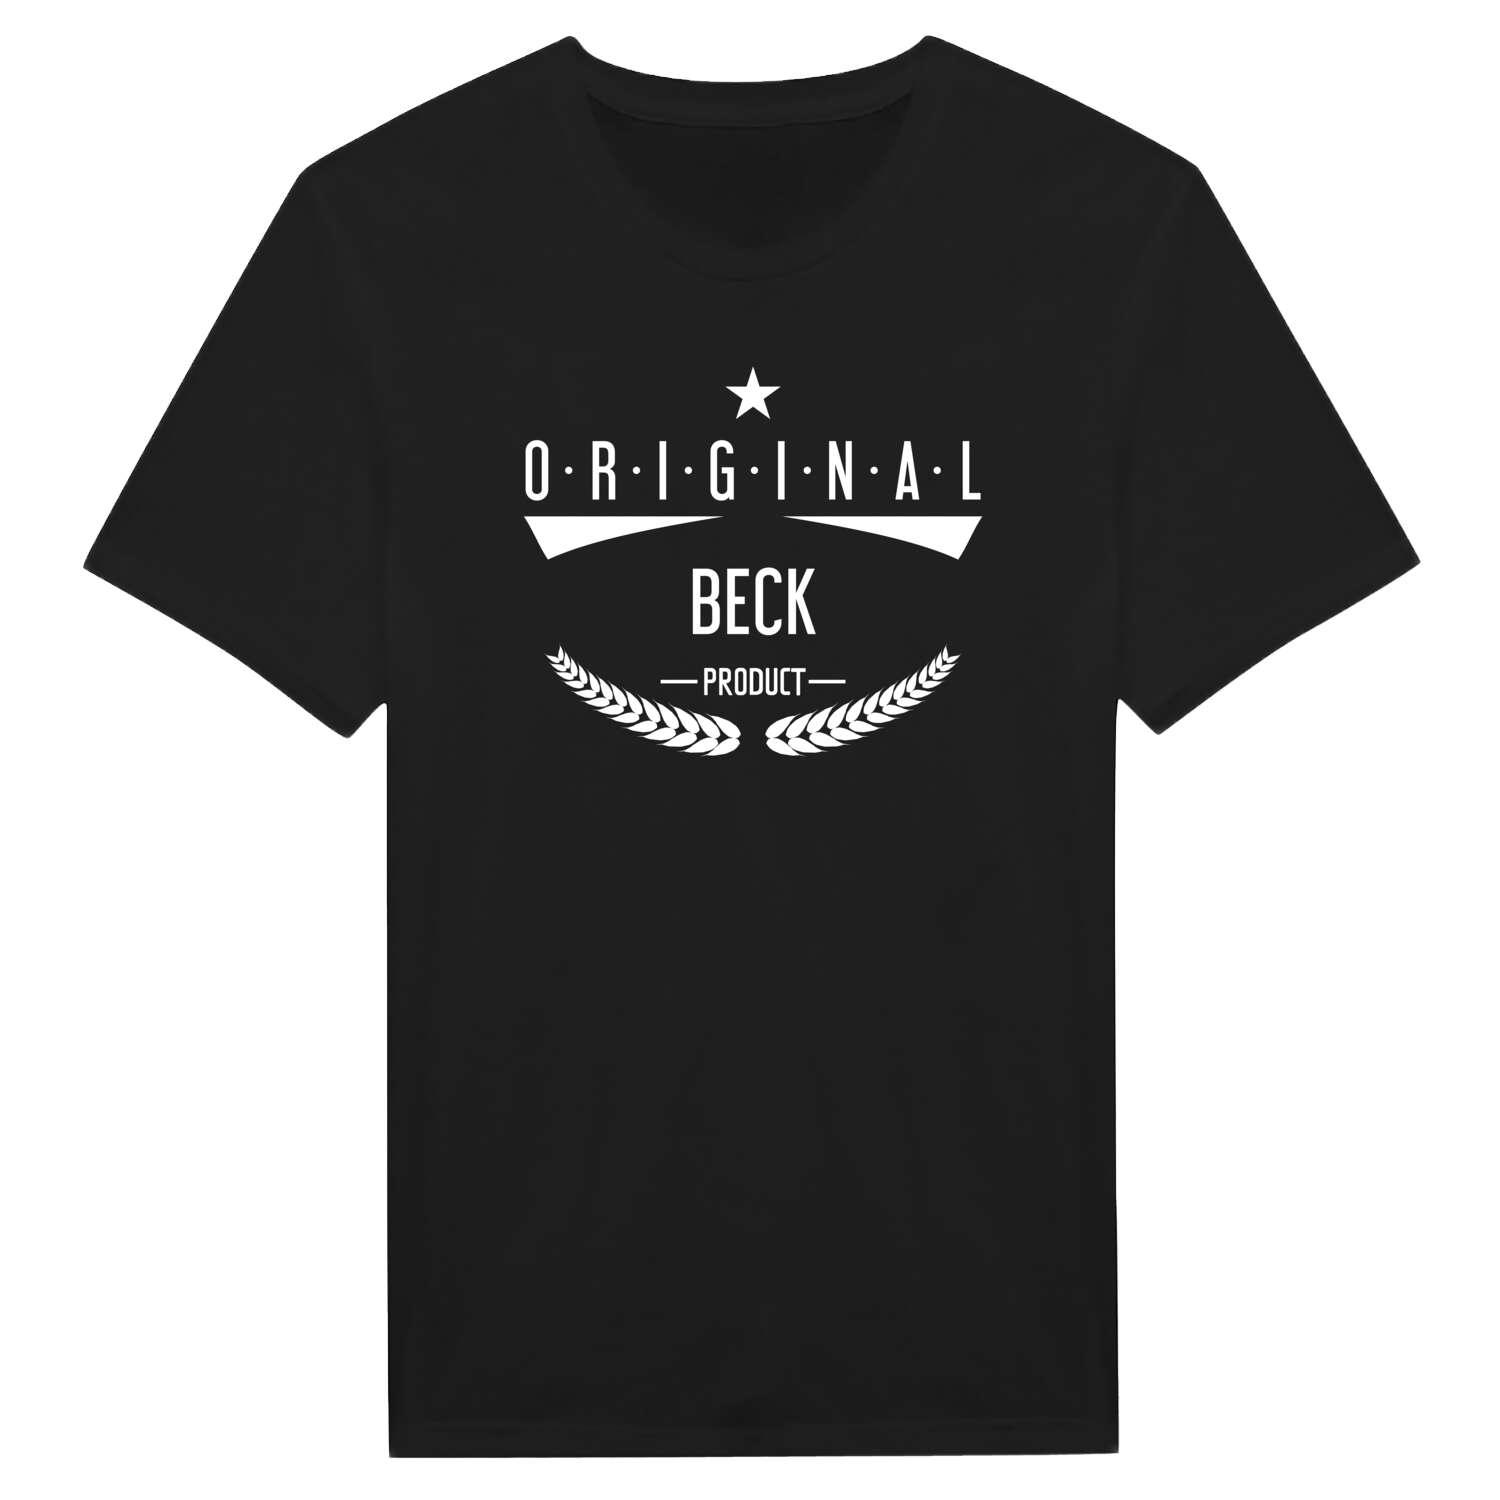 Beck T-Shirt »Original Product«